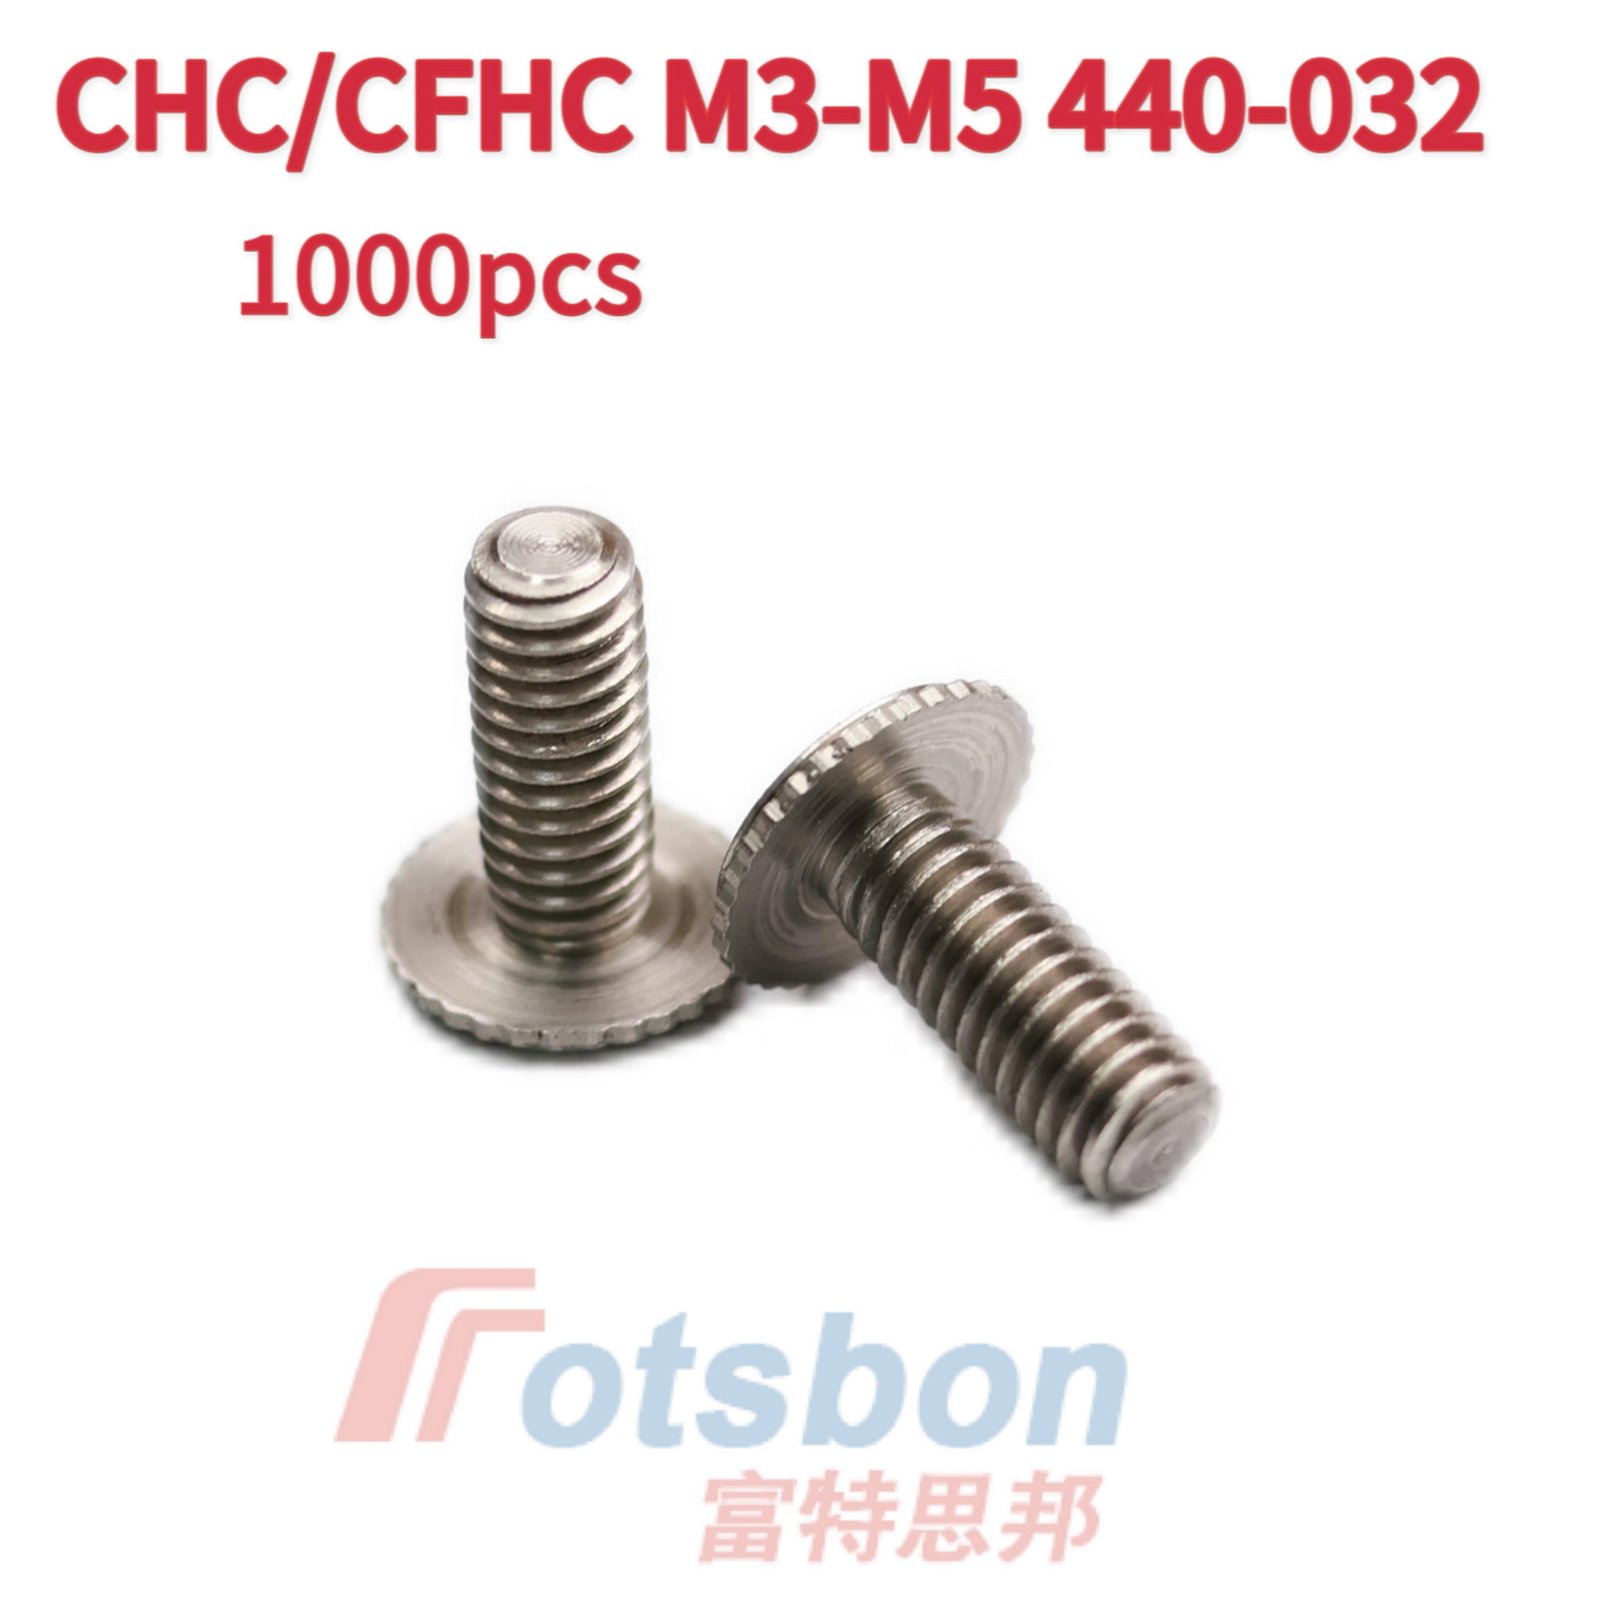 CFHC-M5-16埋頭壓鉚螺釘不鏽鋼滾花螺絲反向壓進鈑金件